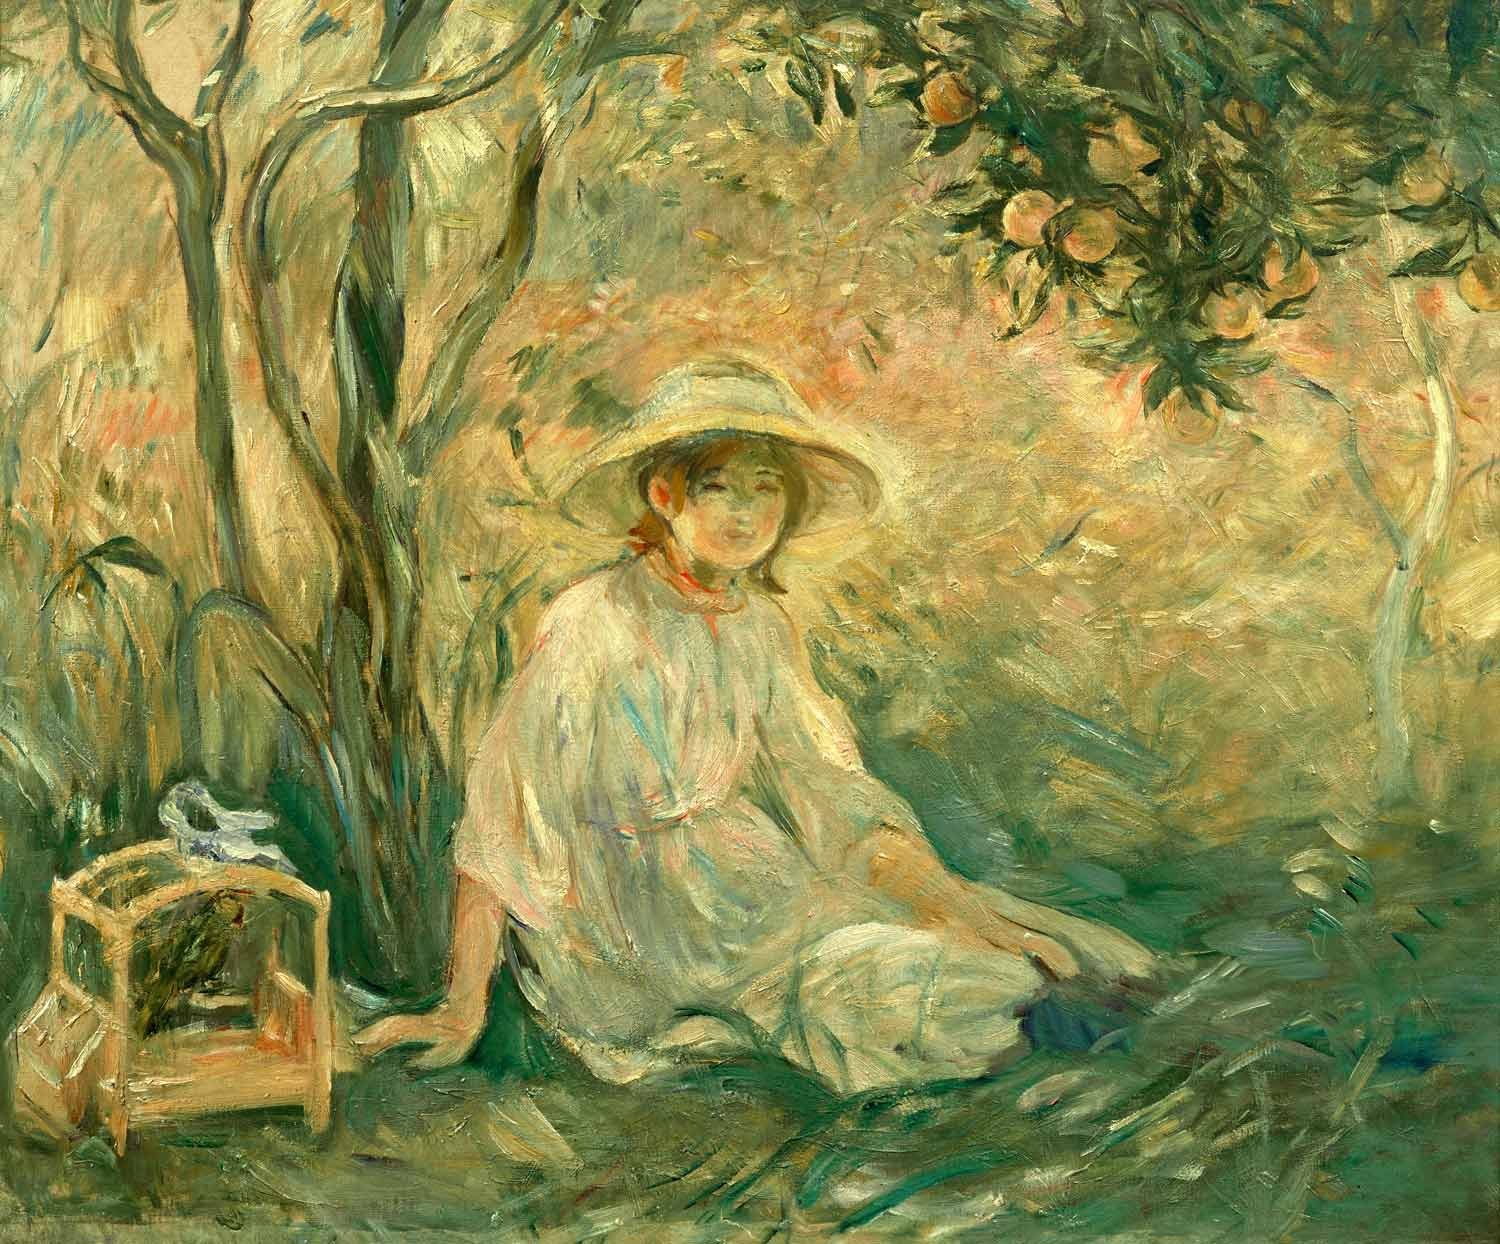 在橘子樹下 by Berthe Morisot - 1889 - 73.03 x 84.77 cm 